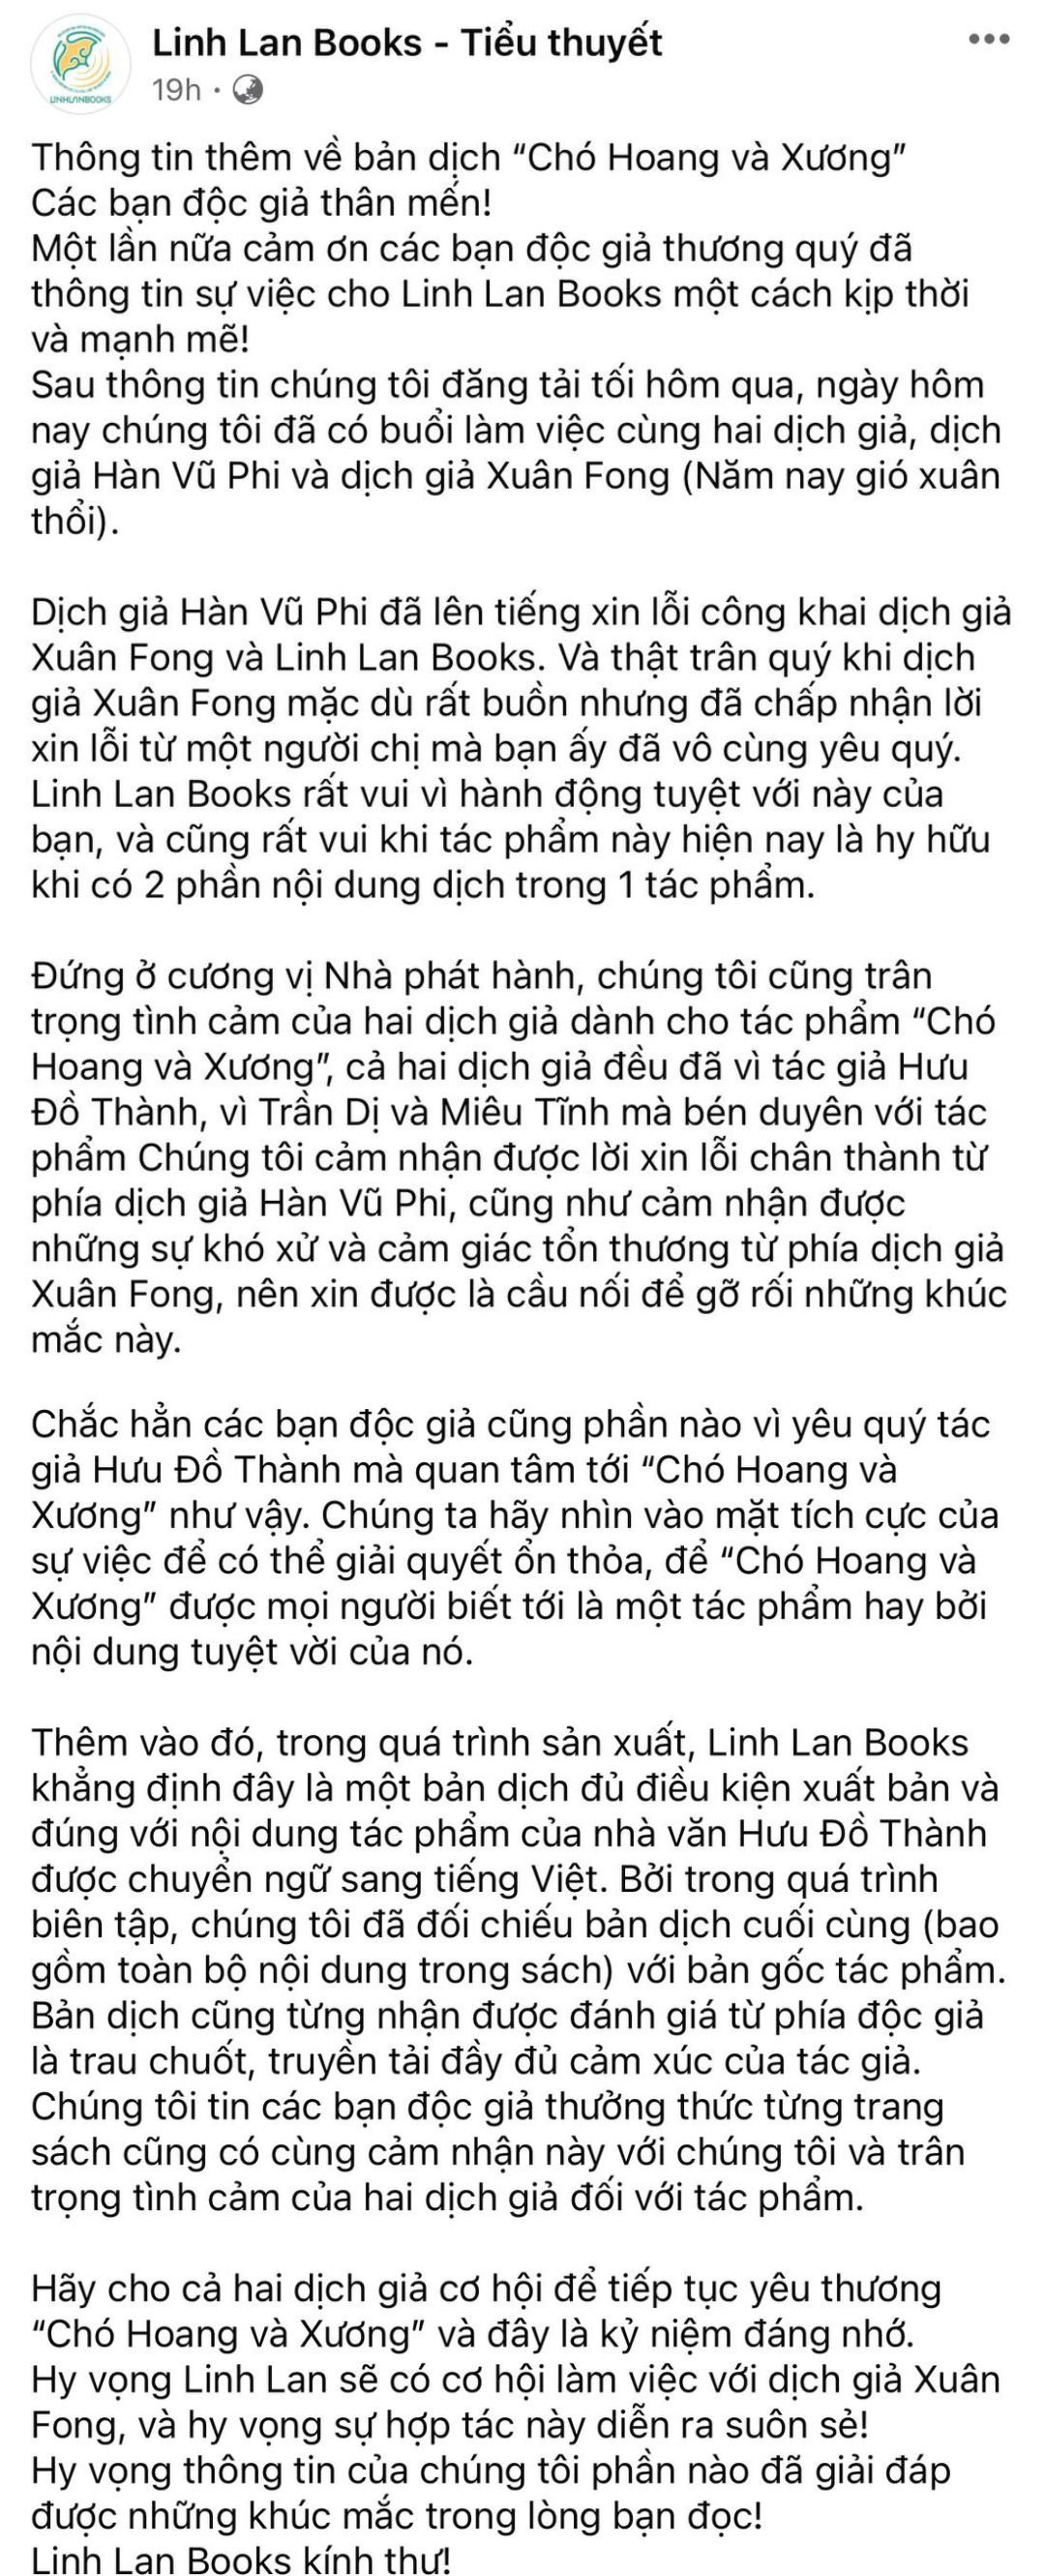 Bùng drama ngành sách: Dịch giả nổi tiếng sao chép bản dịch trên mạng, nhà phát hành xin lỗi hời hợt hứng bão chỉ trích- Ảnh 8.